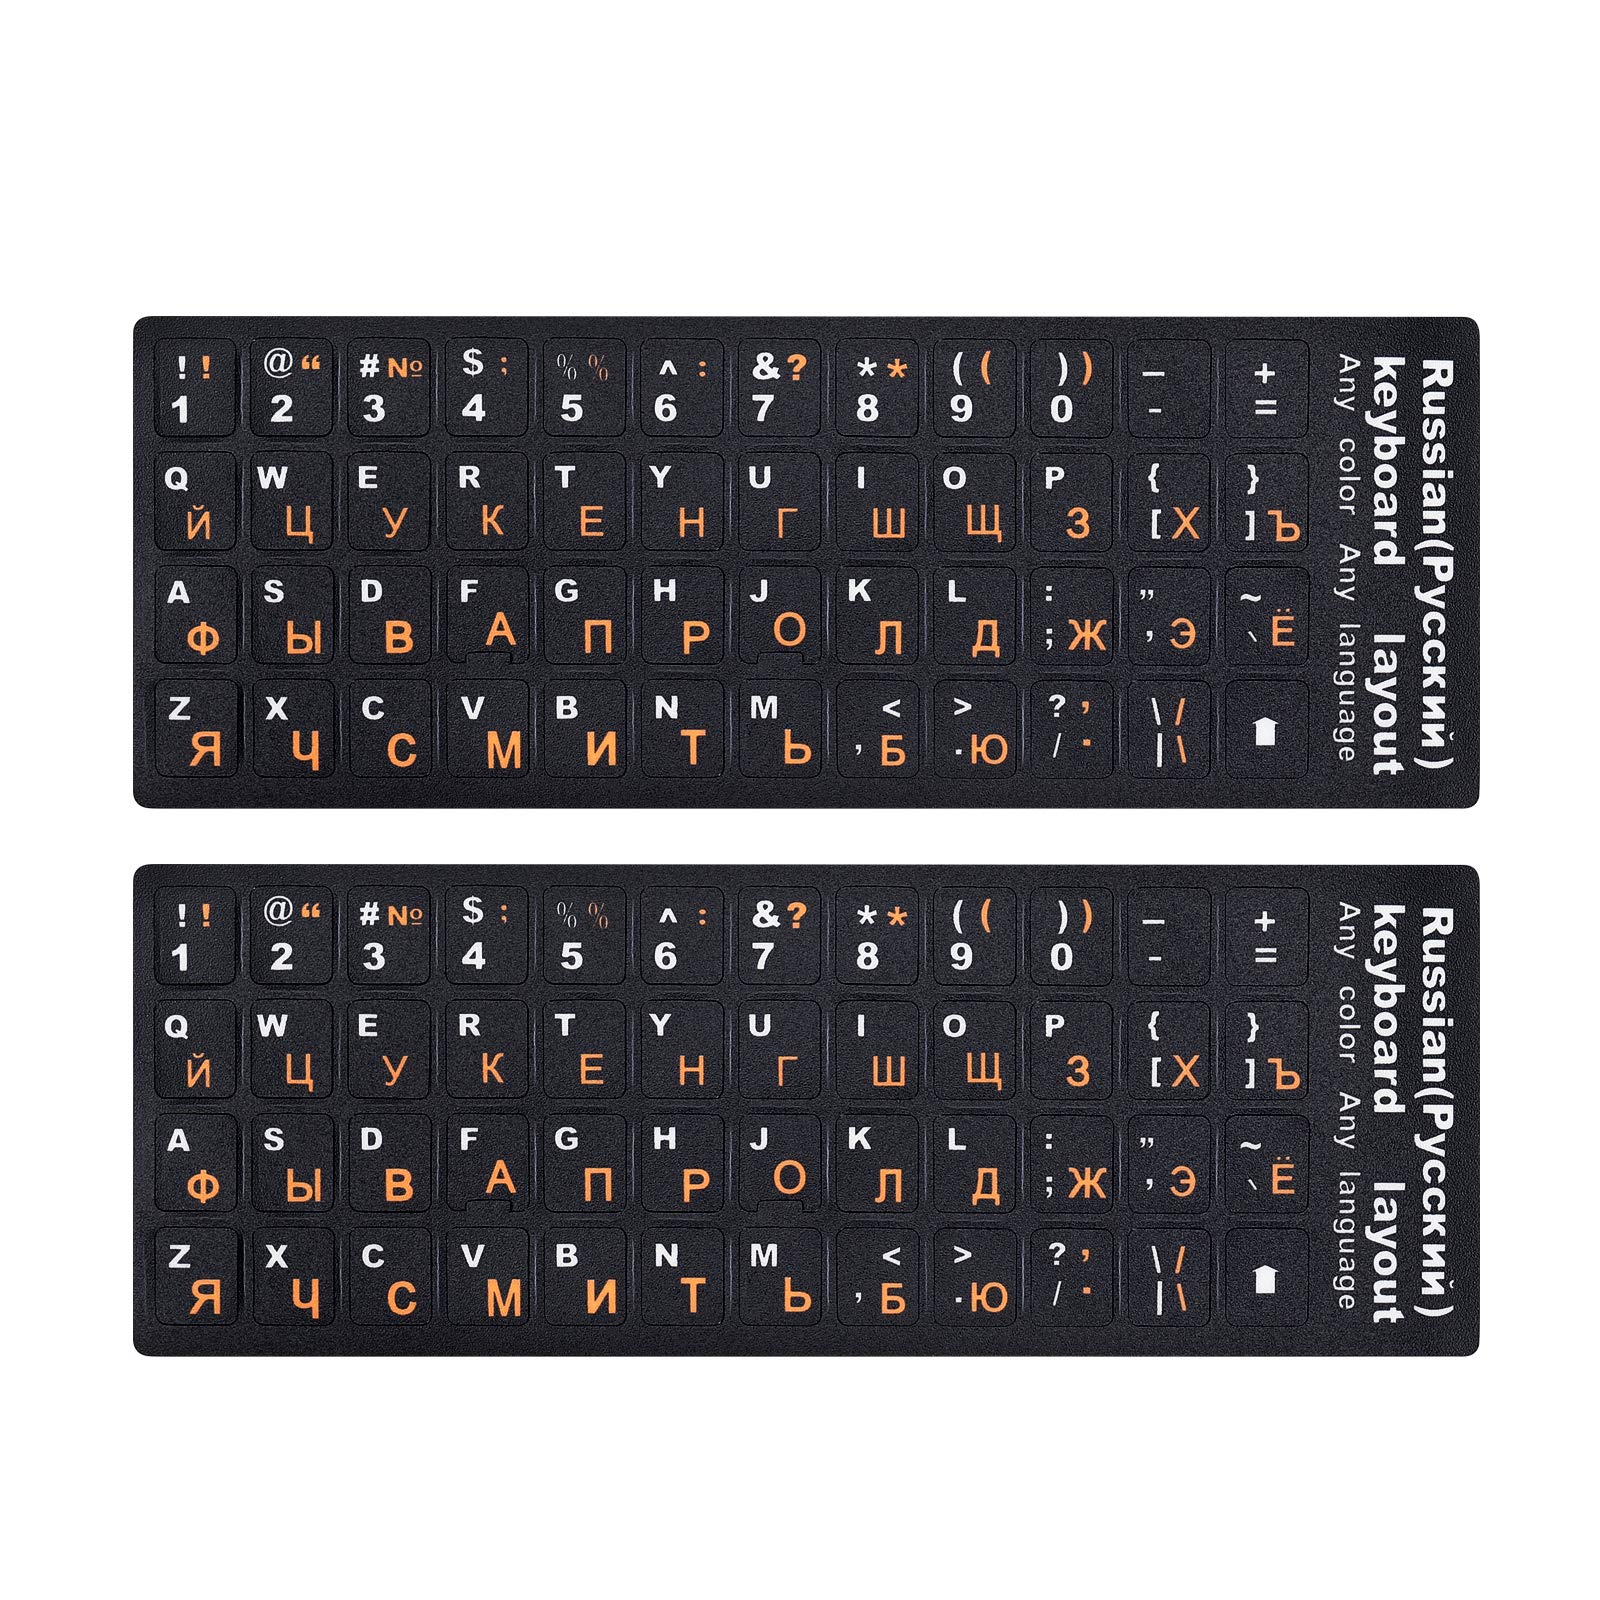 Bạn đang học tiếng Nga và gặp khó khăn với bàn phím? Russian Keyboard Stickers là giải pháp cho bạn. Hình ảnh liên quan sẽ giới thiệu cho bạn các bộ nhãn dán bàn phím tiện lợi và dễ dàng sử dụng. Hãy xem để tăng hiệu quả học tập của mình.